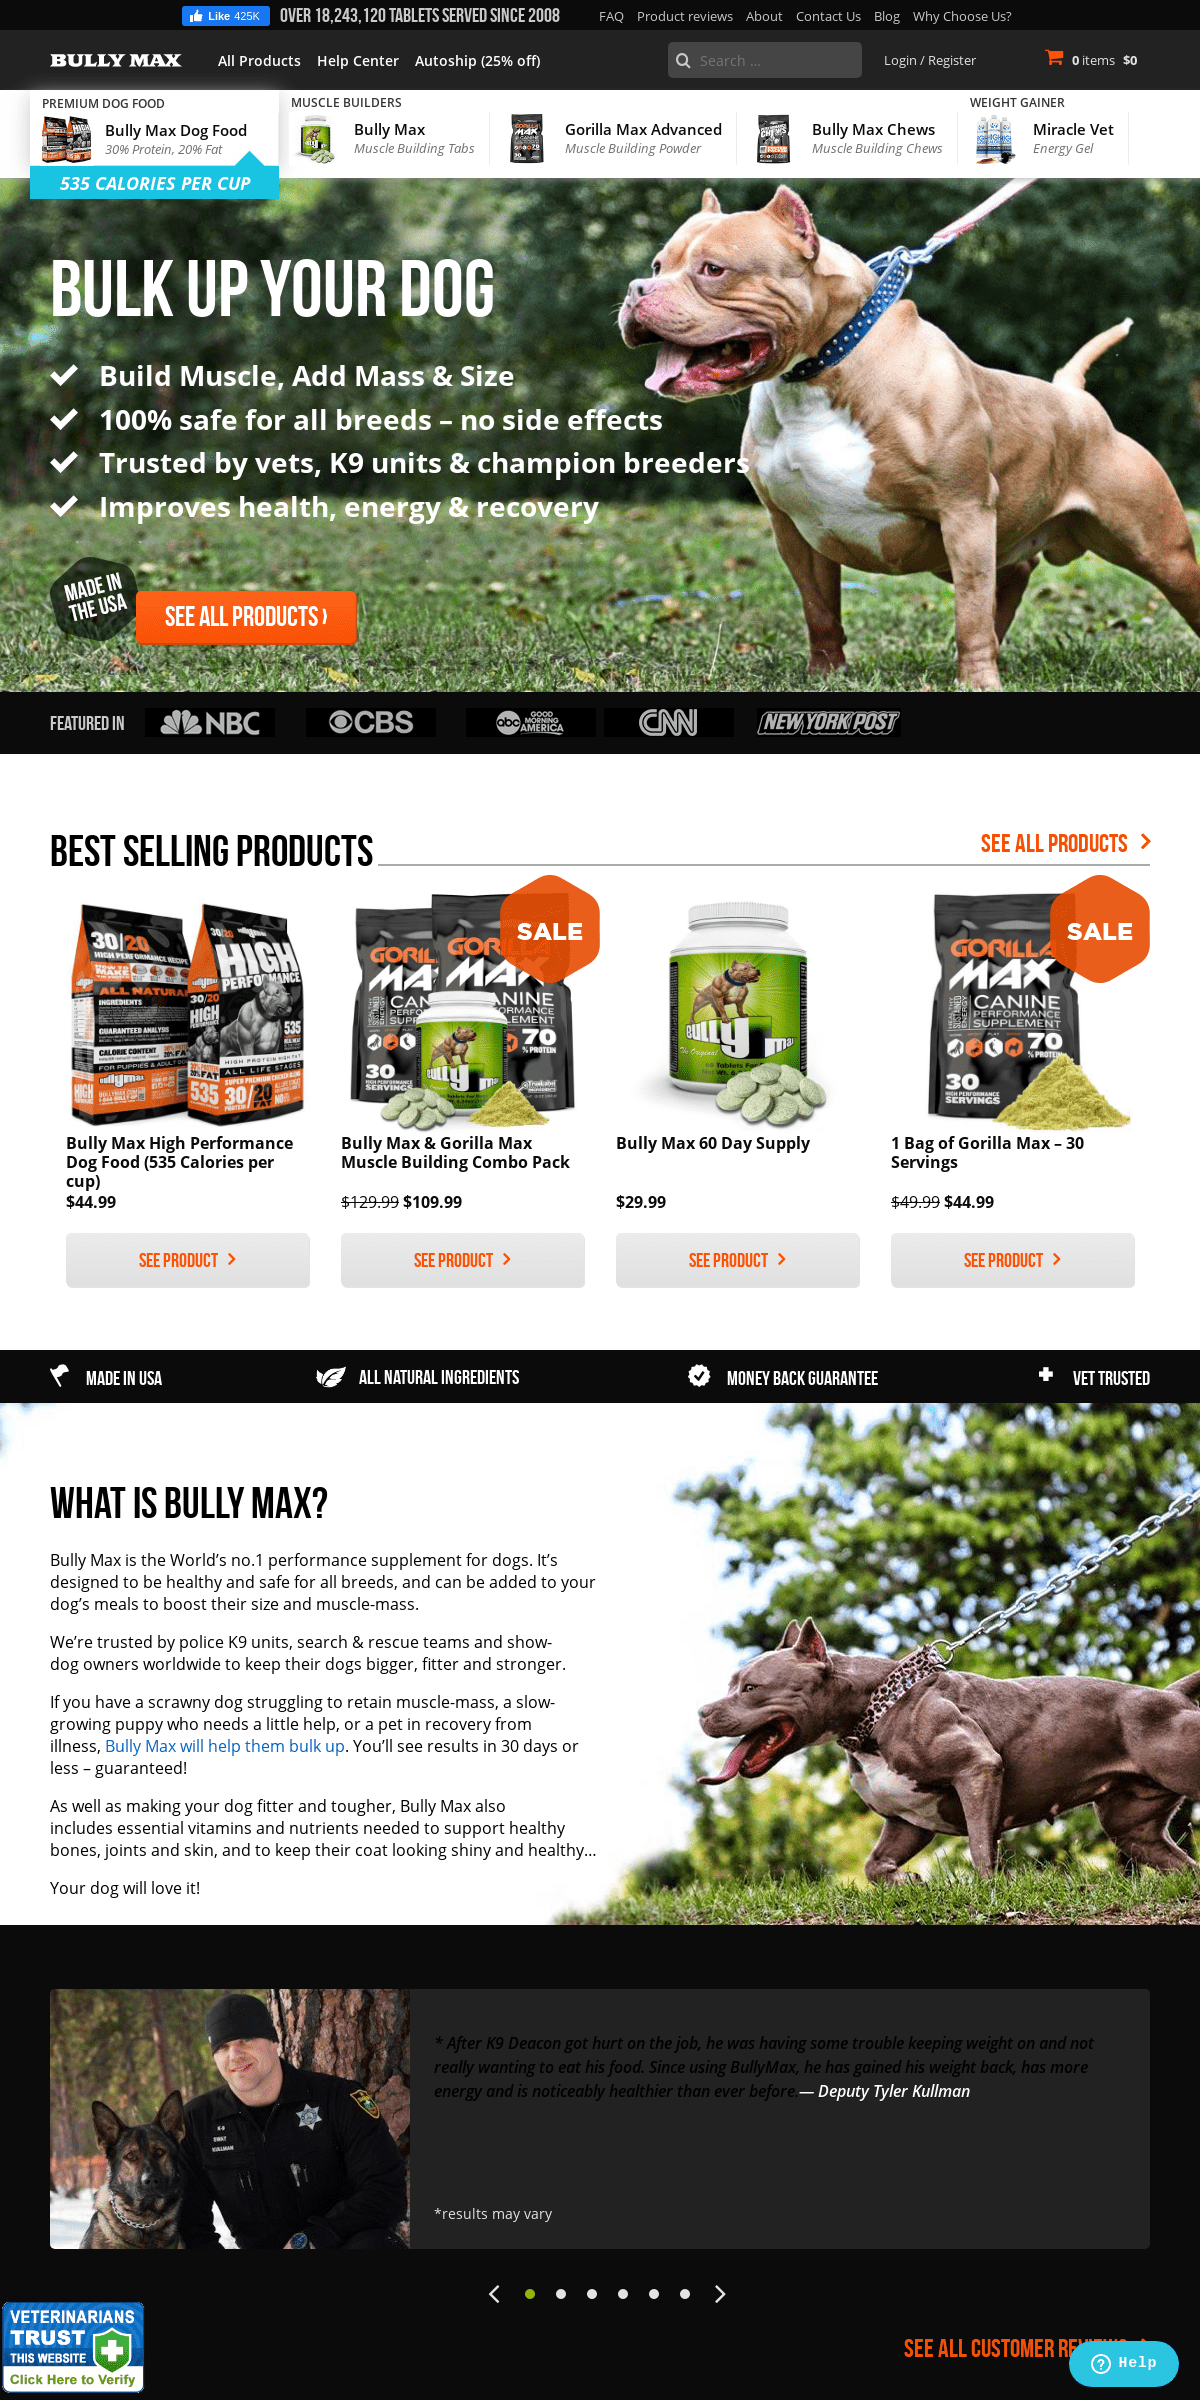 A complete backup of vitaminsforpitbulls.com